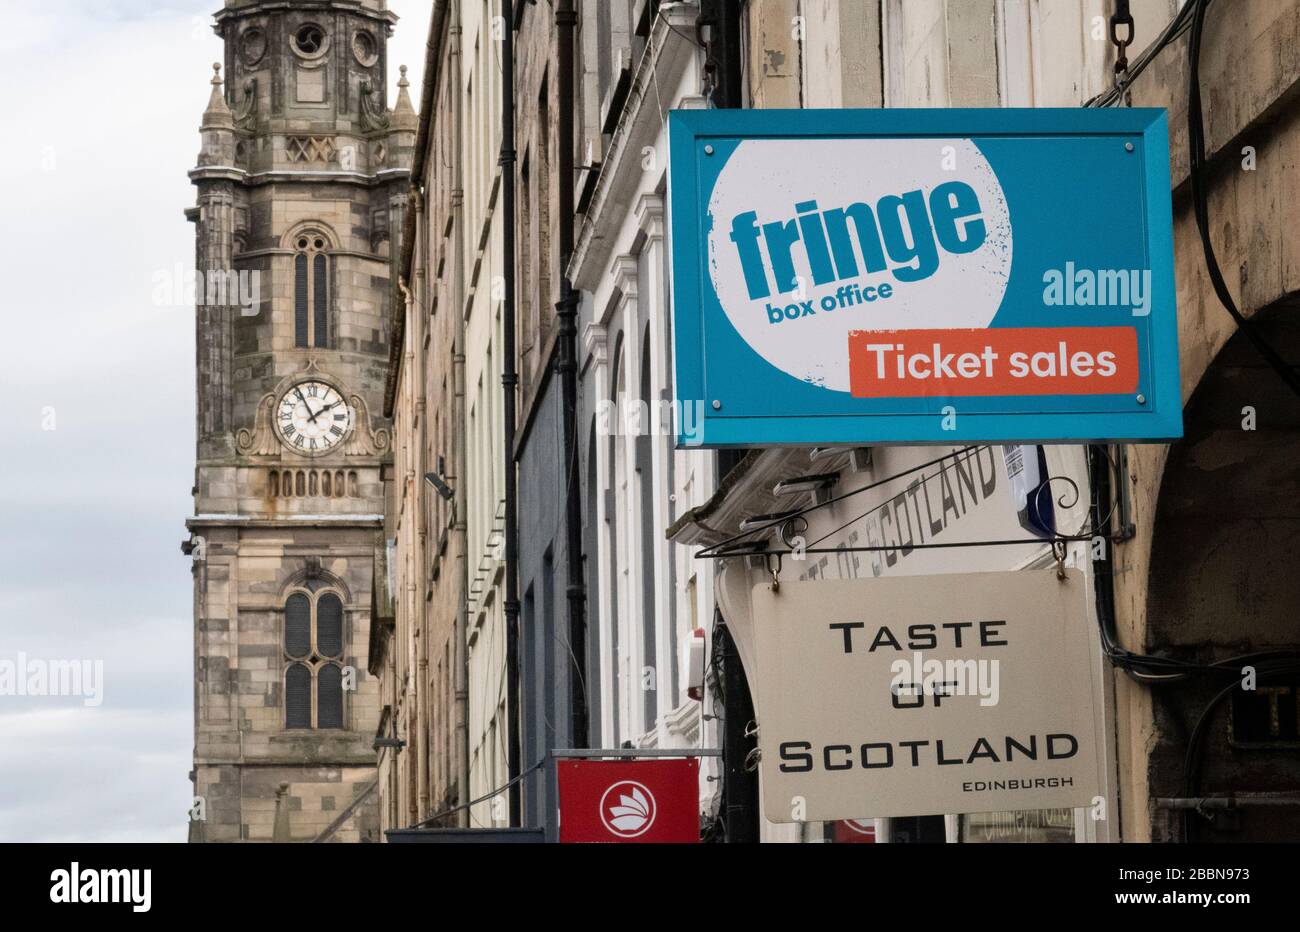 La boutique Edinburgh Flinge et la billetterie du Royal Mile d'Édimbourg. Le Flinge d'Édimbourg, ainsi que le Military Tattoo, le Festival International d'Edimbourg, le Festival d'Art d'Edimbourg et le Festival International du Livre d'Edimbourg ont tous été annulés cette année en raison de préoccupations concernant la pandémie de Covid-19. Banque D'Images